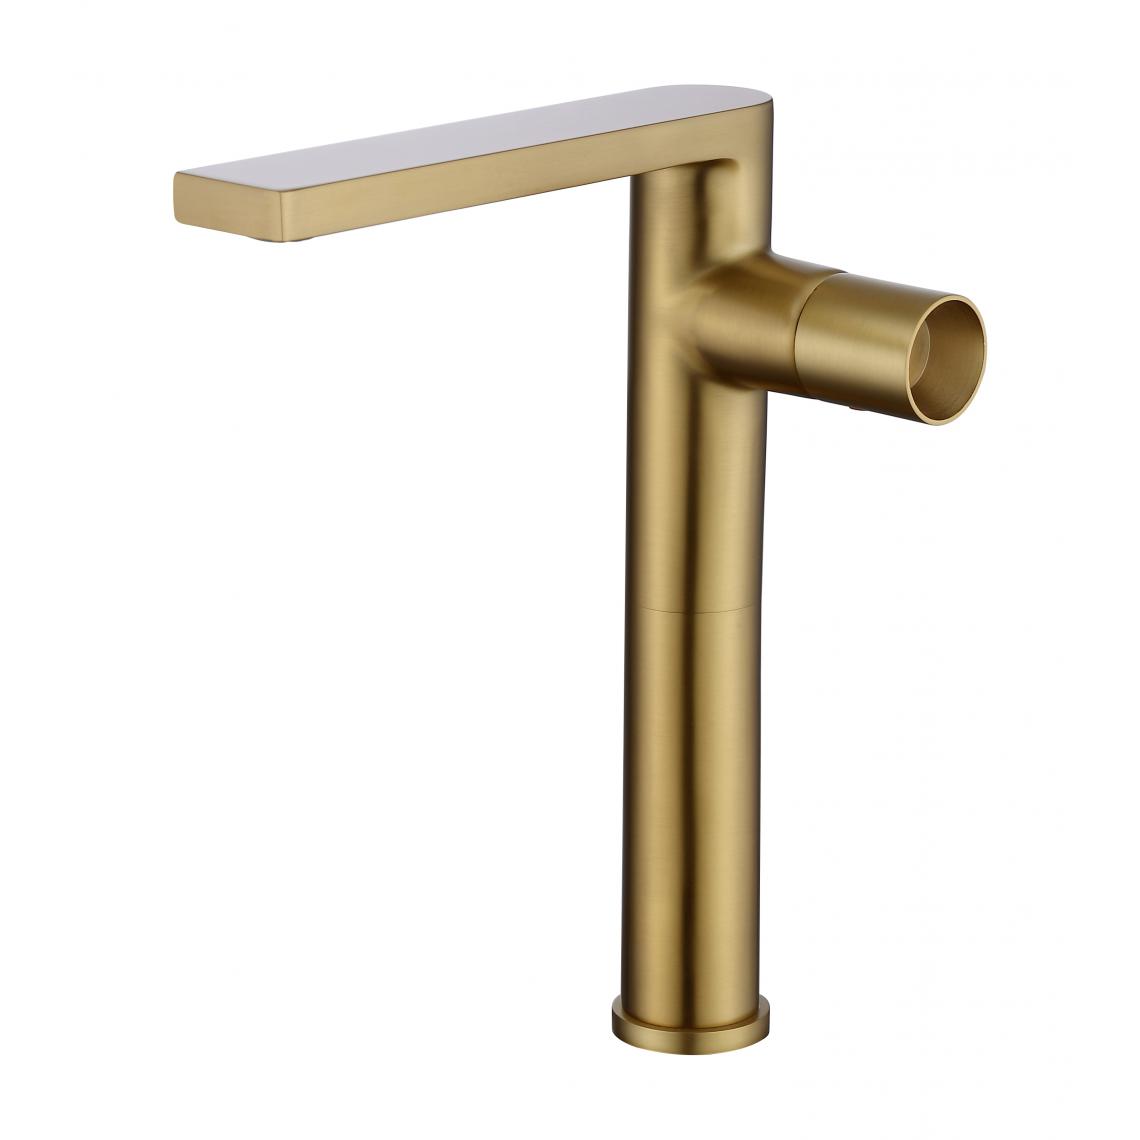 Kroos - Mitigeur design haut pour vasque doré brossé - Robinet de lavabo